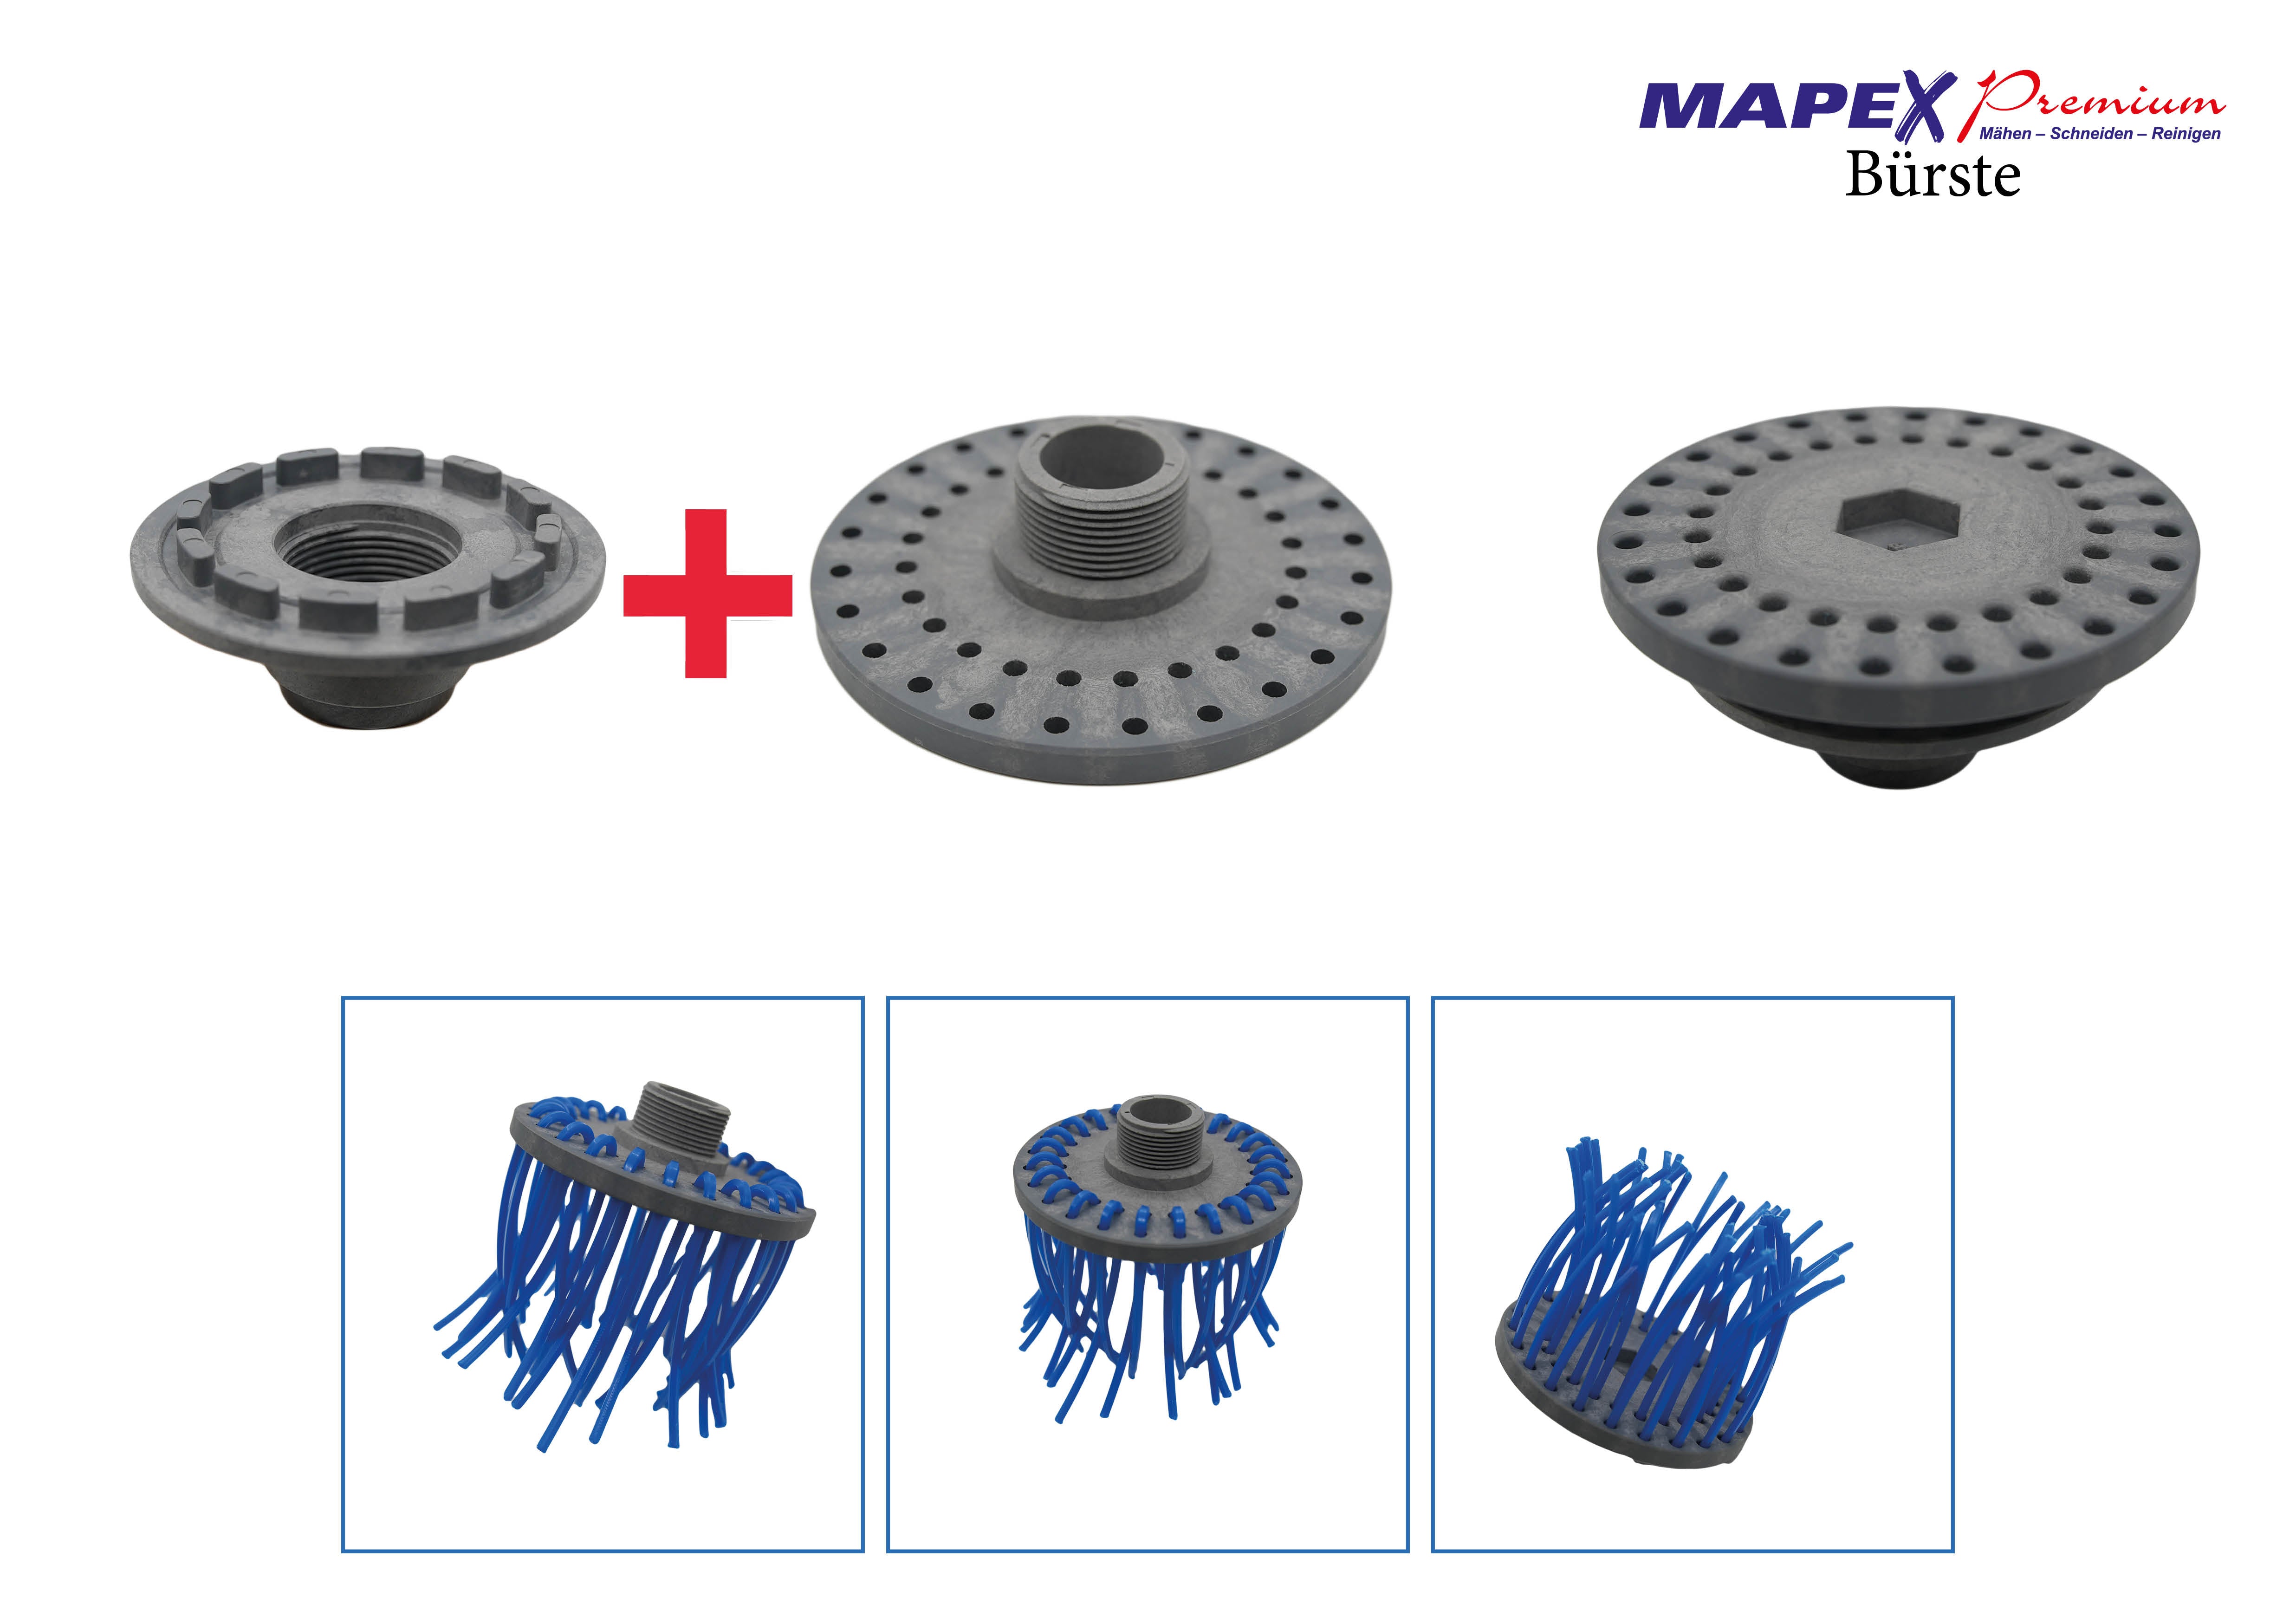 MAPEX Premium Set - Mähkopf - Bürsten Aufsatz - inkl. 2 Mähfaden